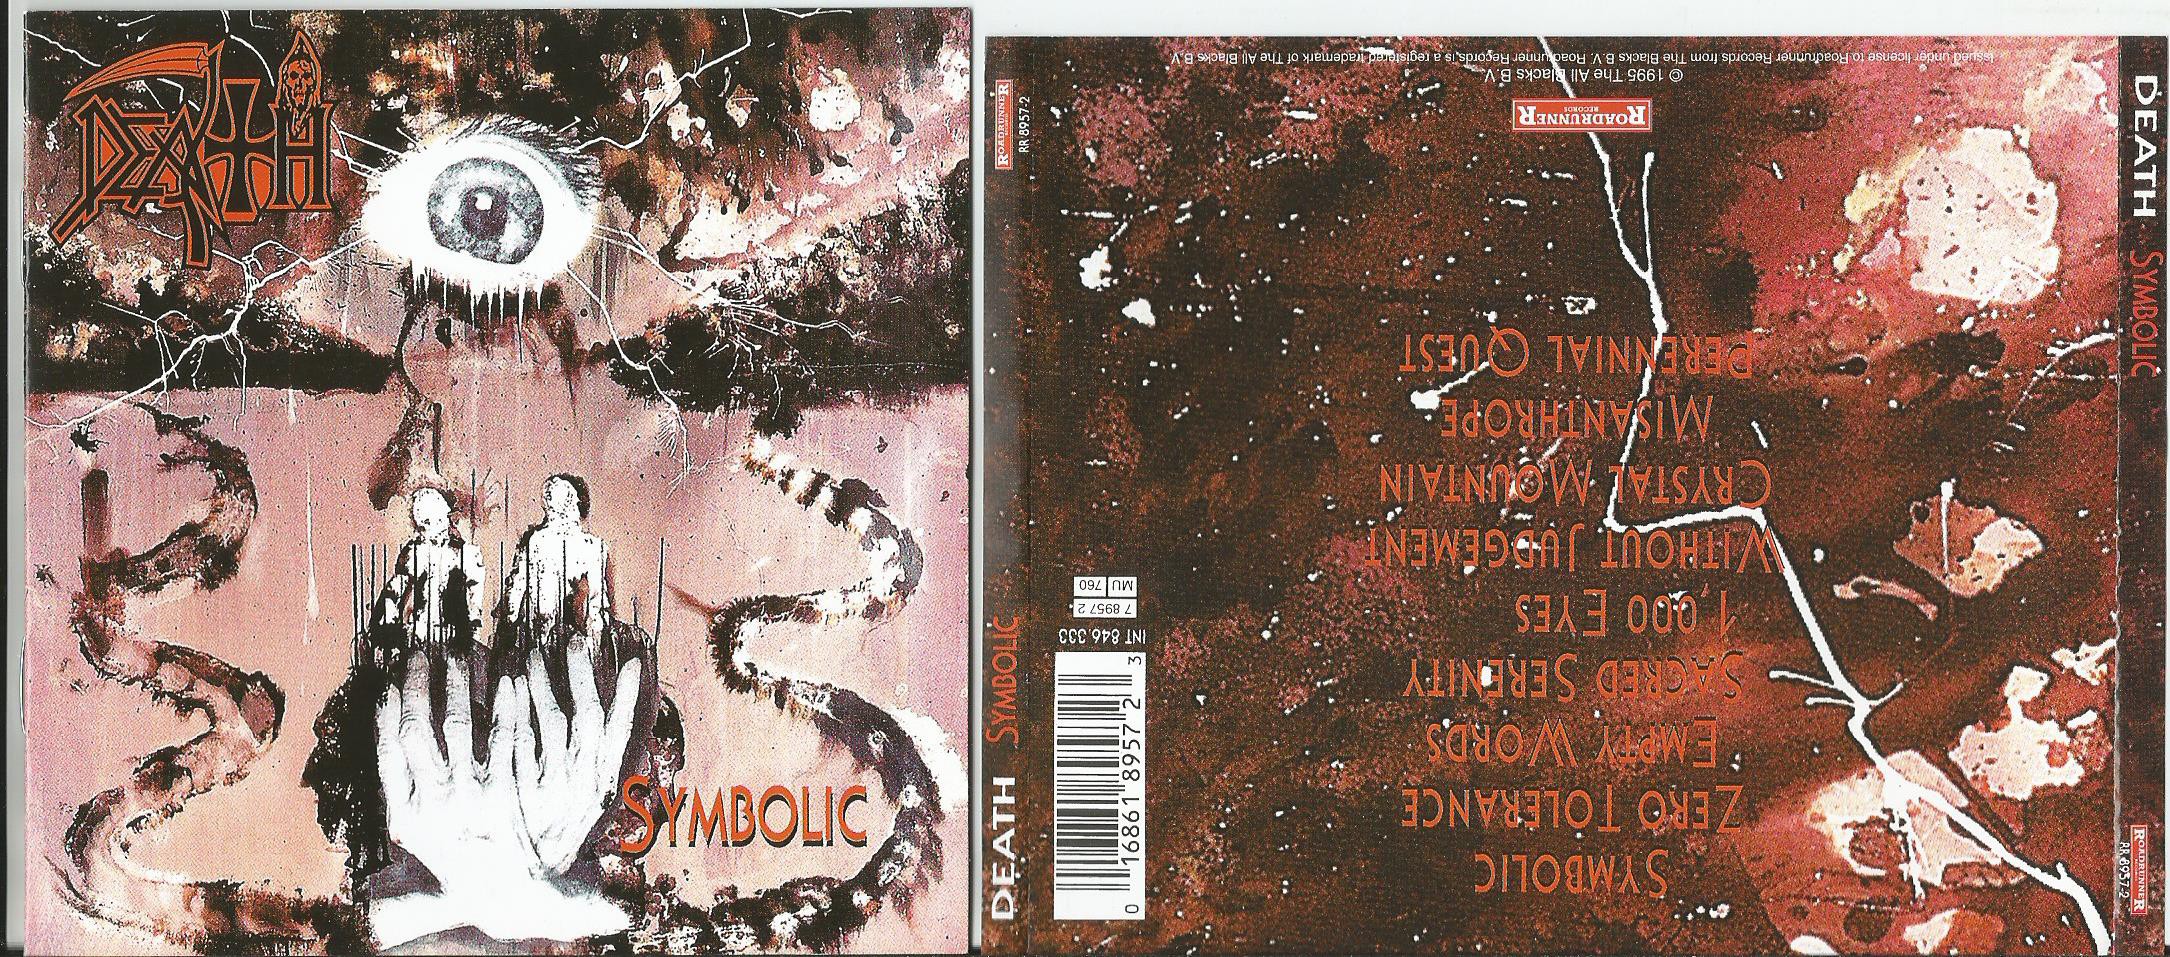 Death symbolic. Symbolic CD. Death "symbolic (CD)".